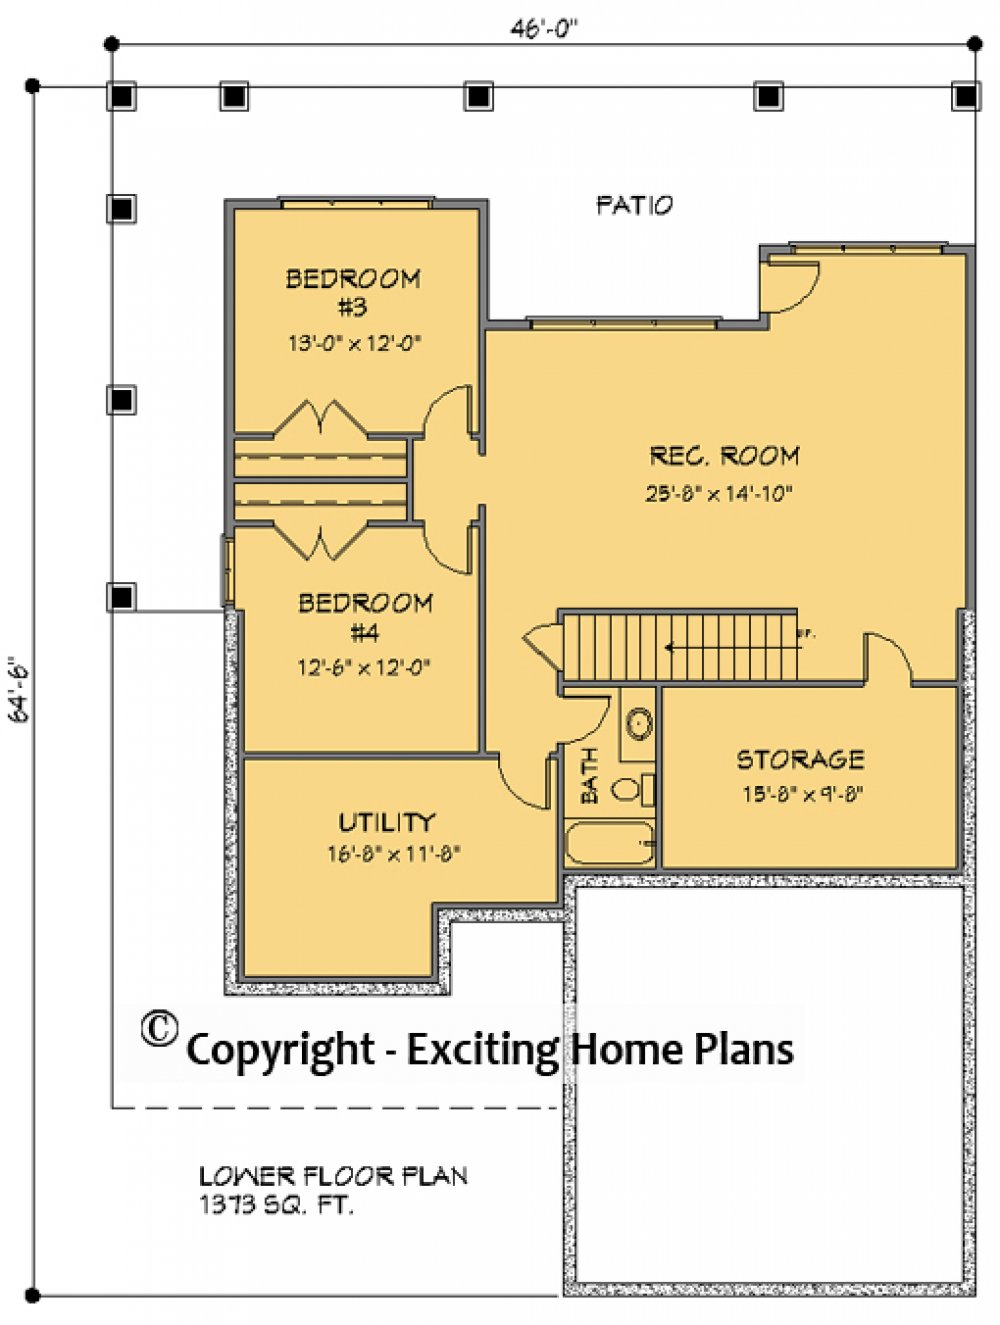 House Plan E1740-10 Lower Floor Plan